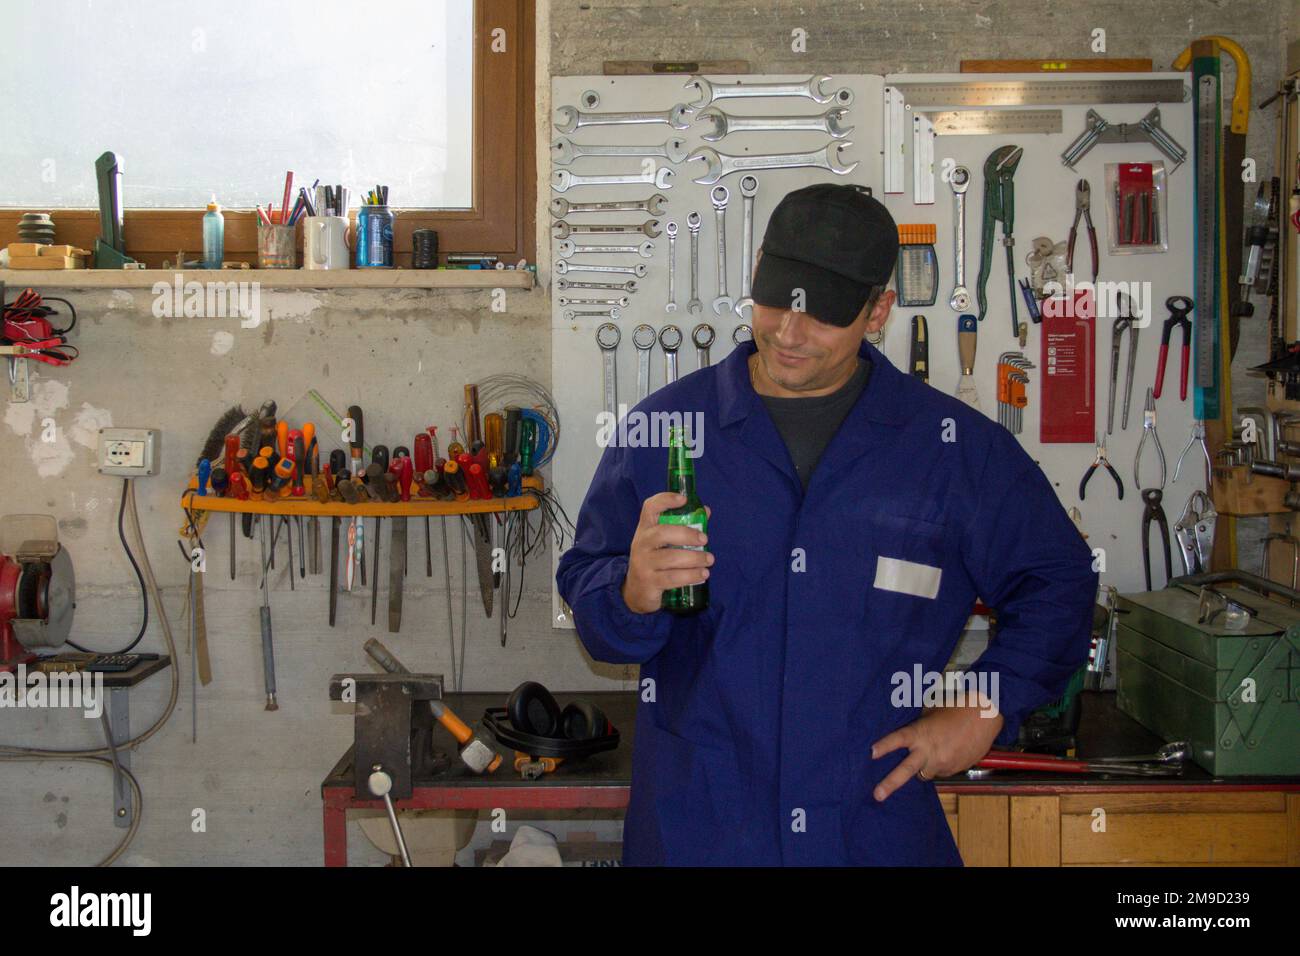 Bild eines Mannes im Overall mit einer Flasche Bier in seiner Werkstatt. Pause, entspannen Sie sich nach der Arbeit. Stockfoto